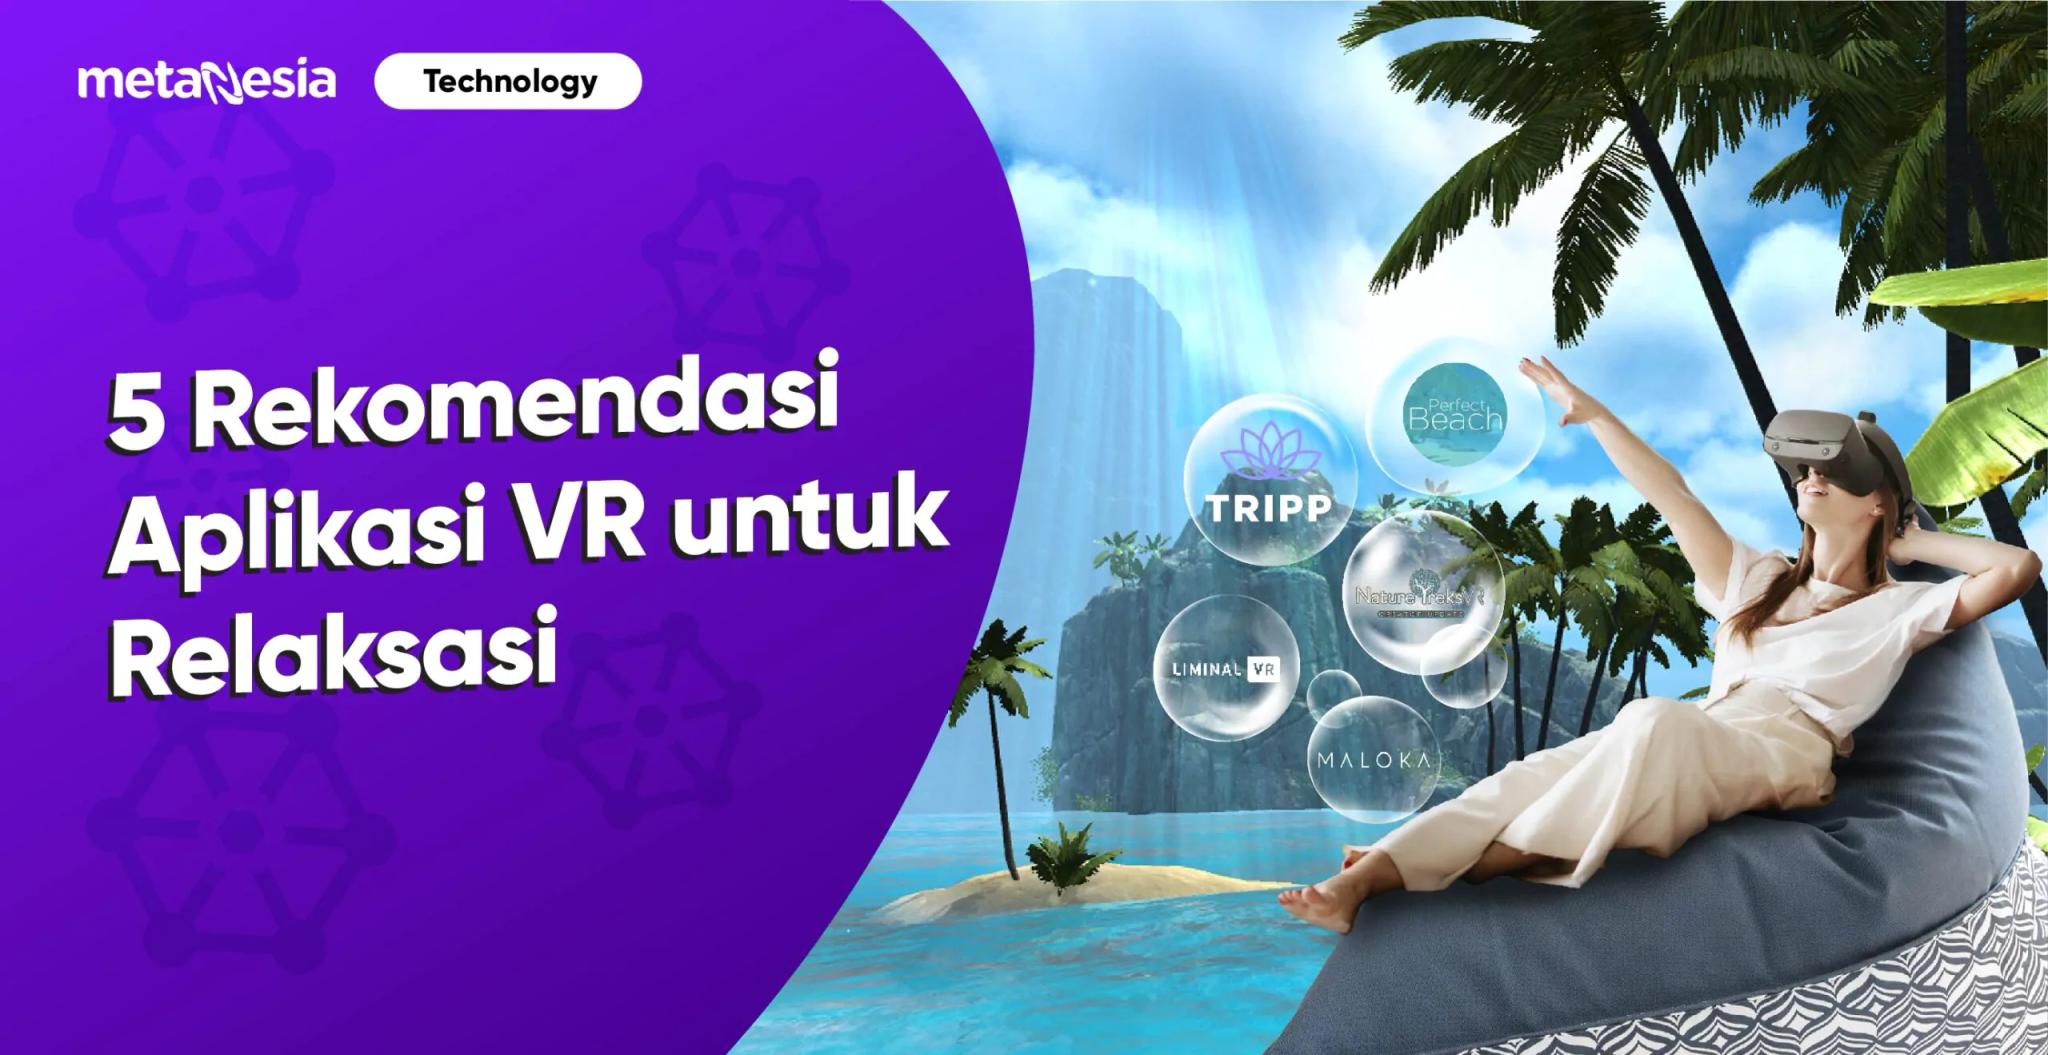 5 Rekomendasi Aplikasi VR untuk Relaksasi yang Bisa Kamu Coba!